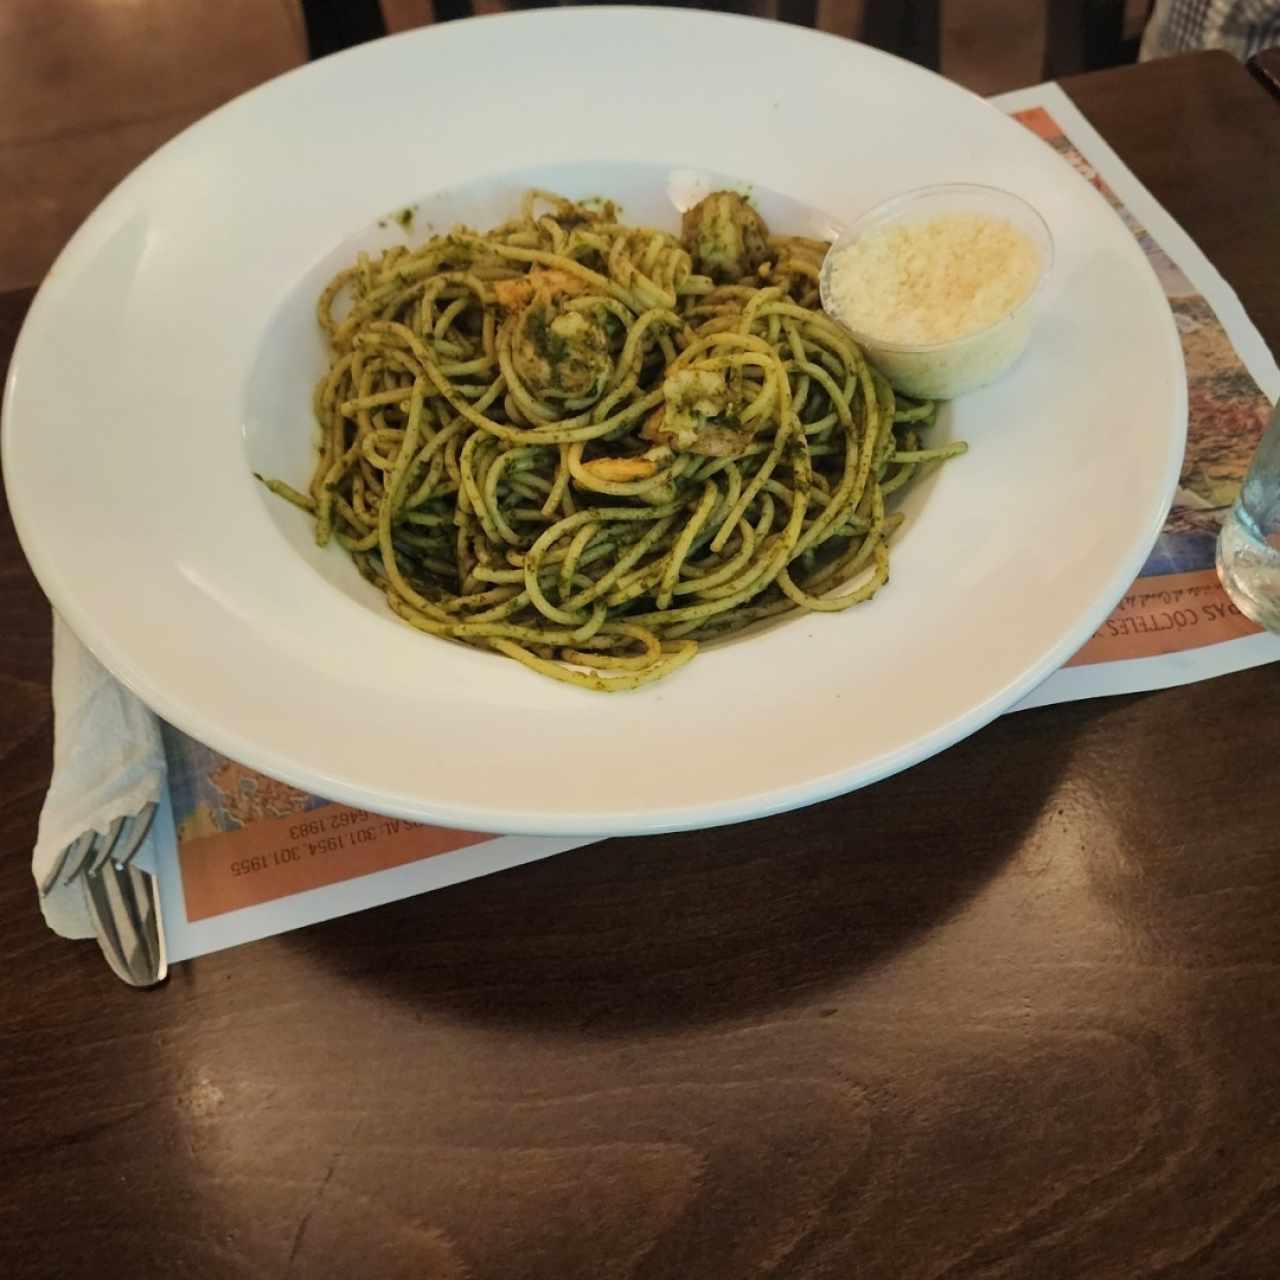 Espaguetti al pesto con camarones, buena porción y deliciosos